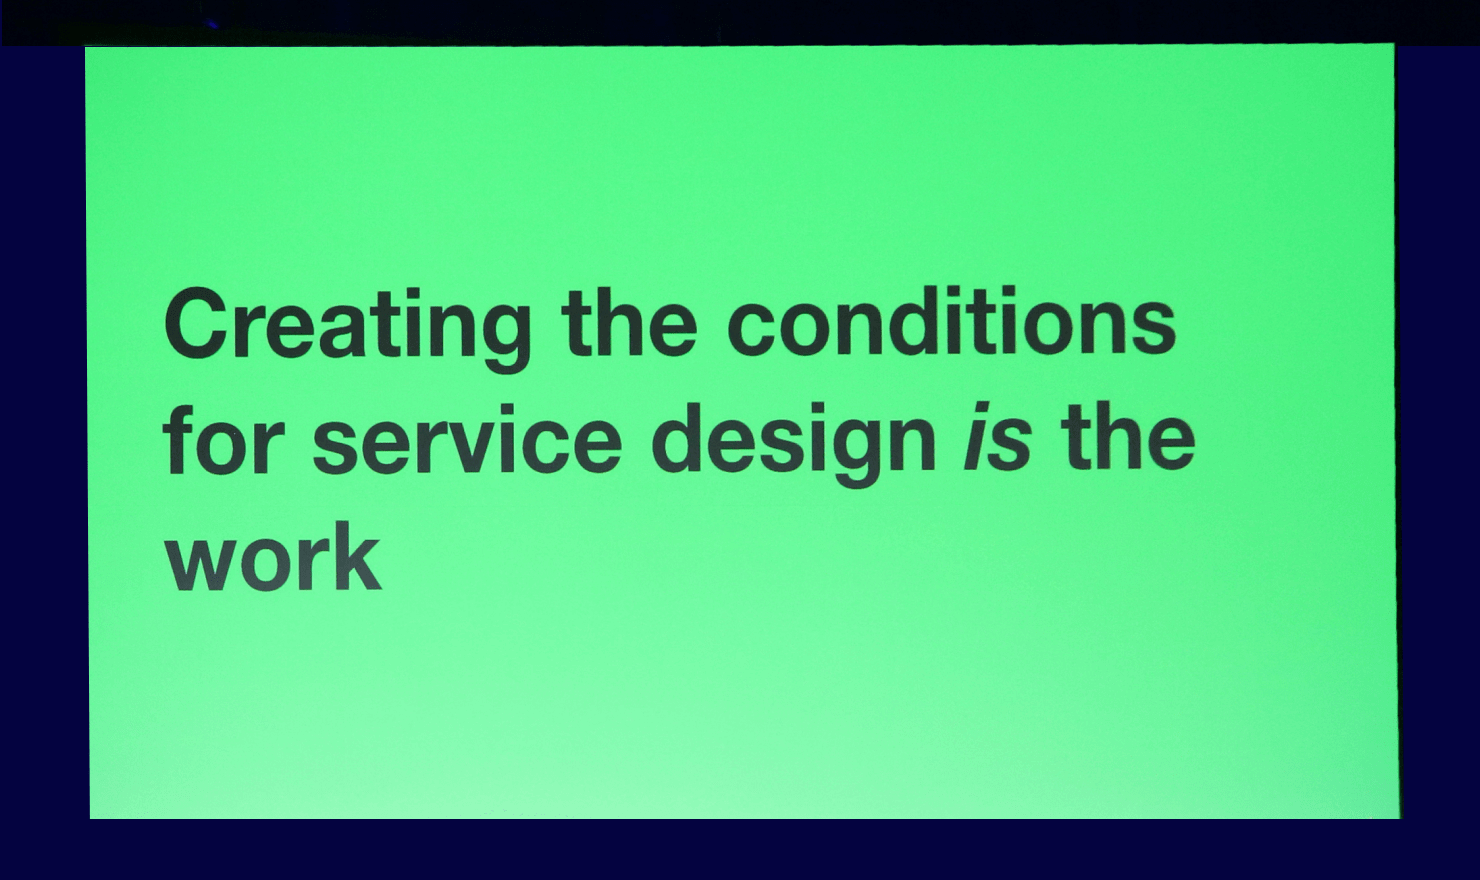 画像：Lou Downe 氏のキーノート中のスライド “Creating the conditions for service design is the work.”